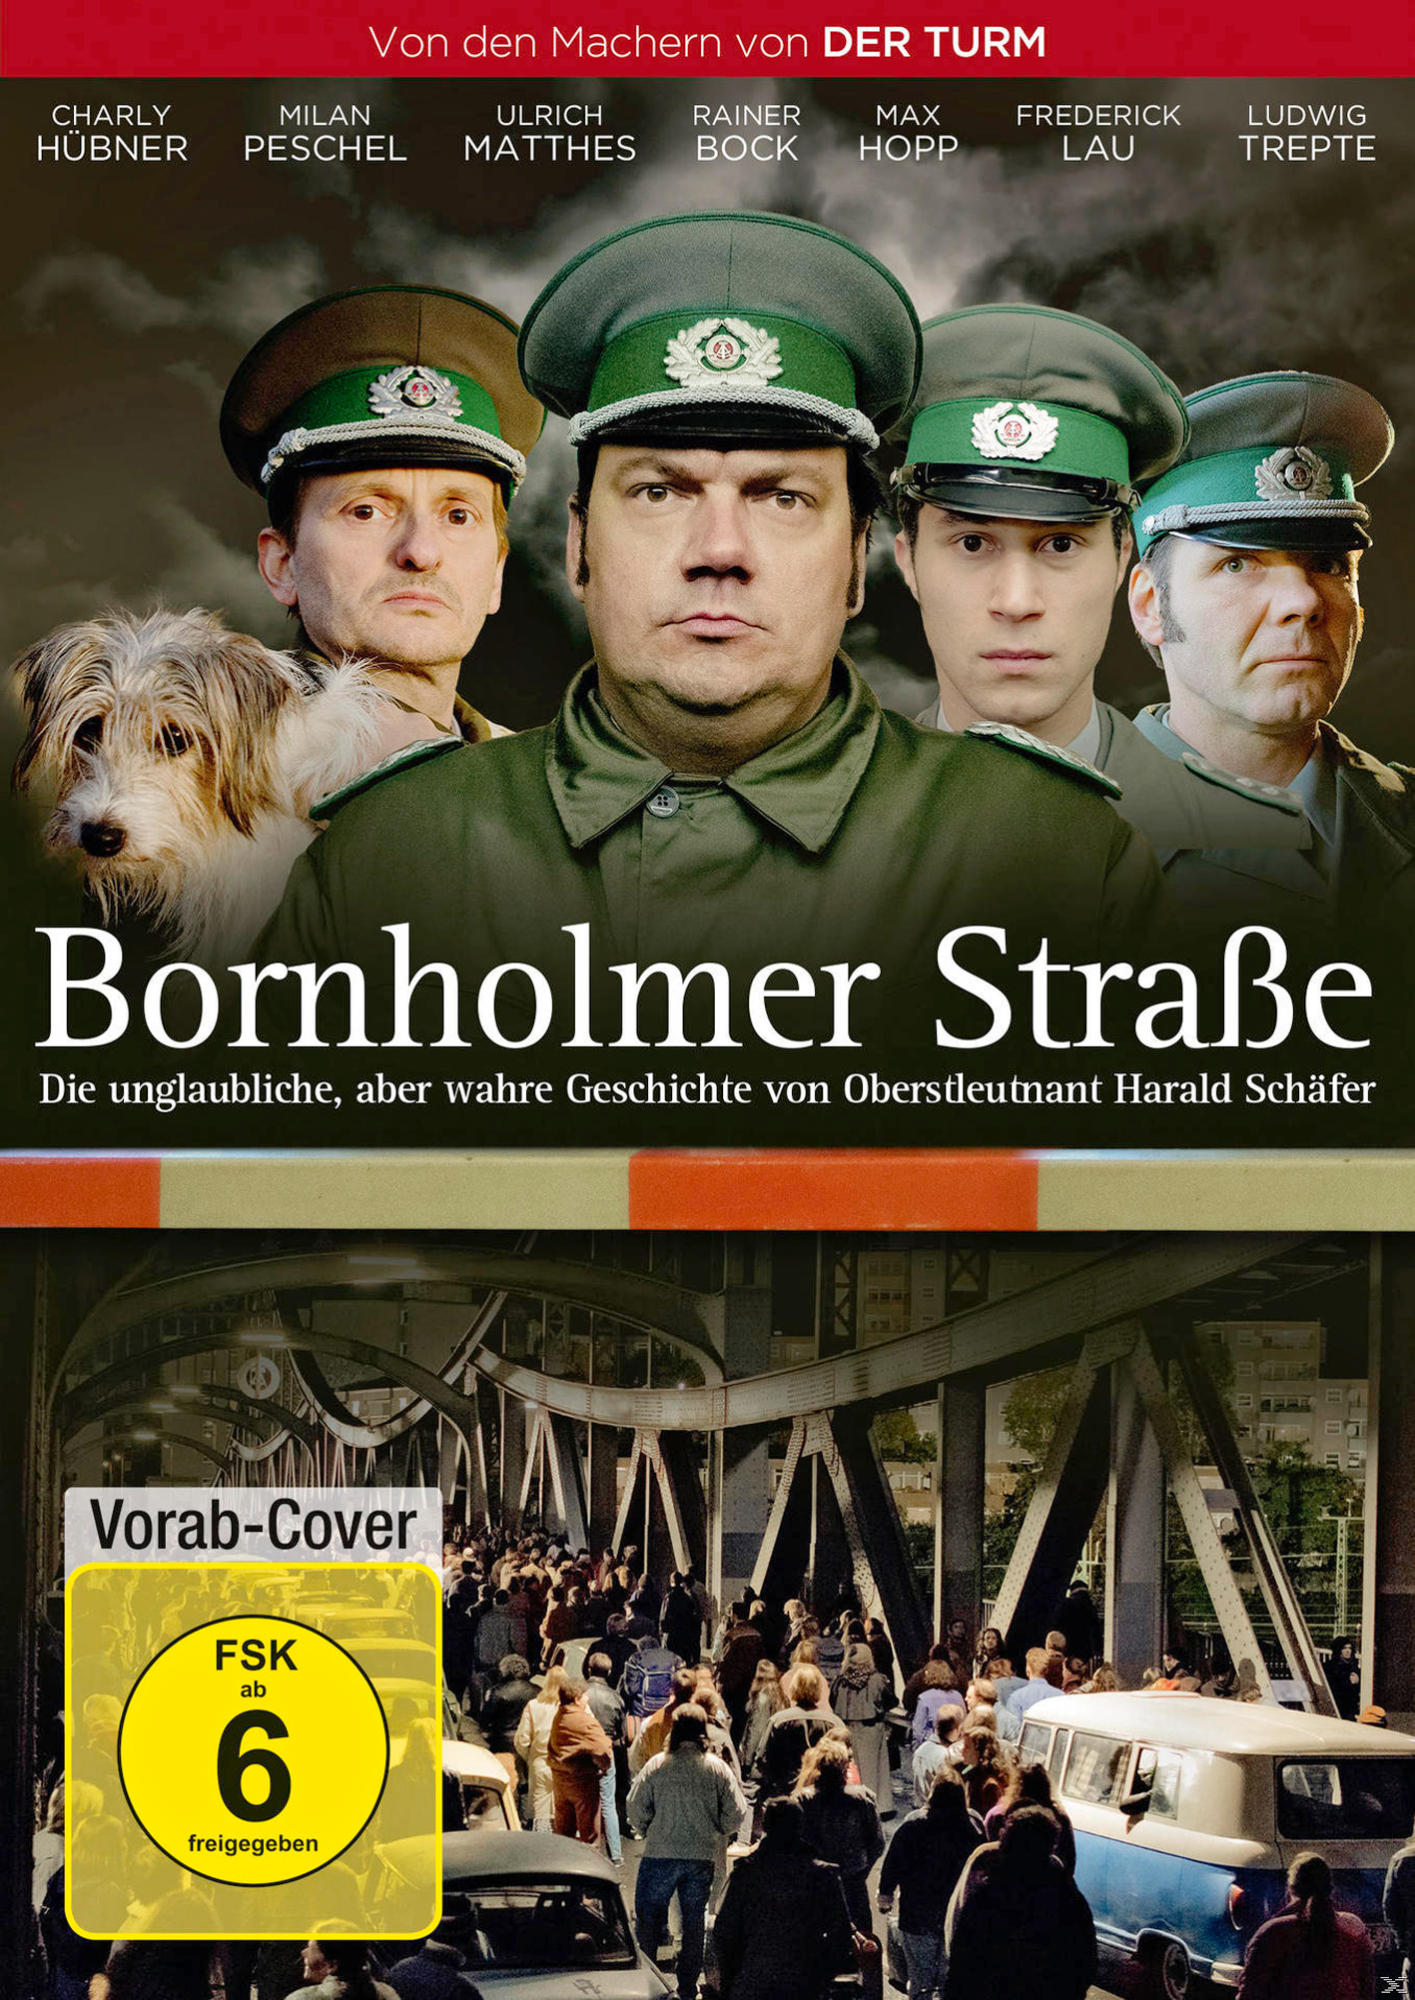 BORNHOLMER STRASSE DVD